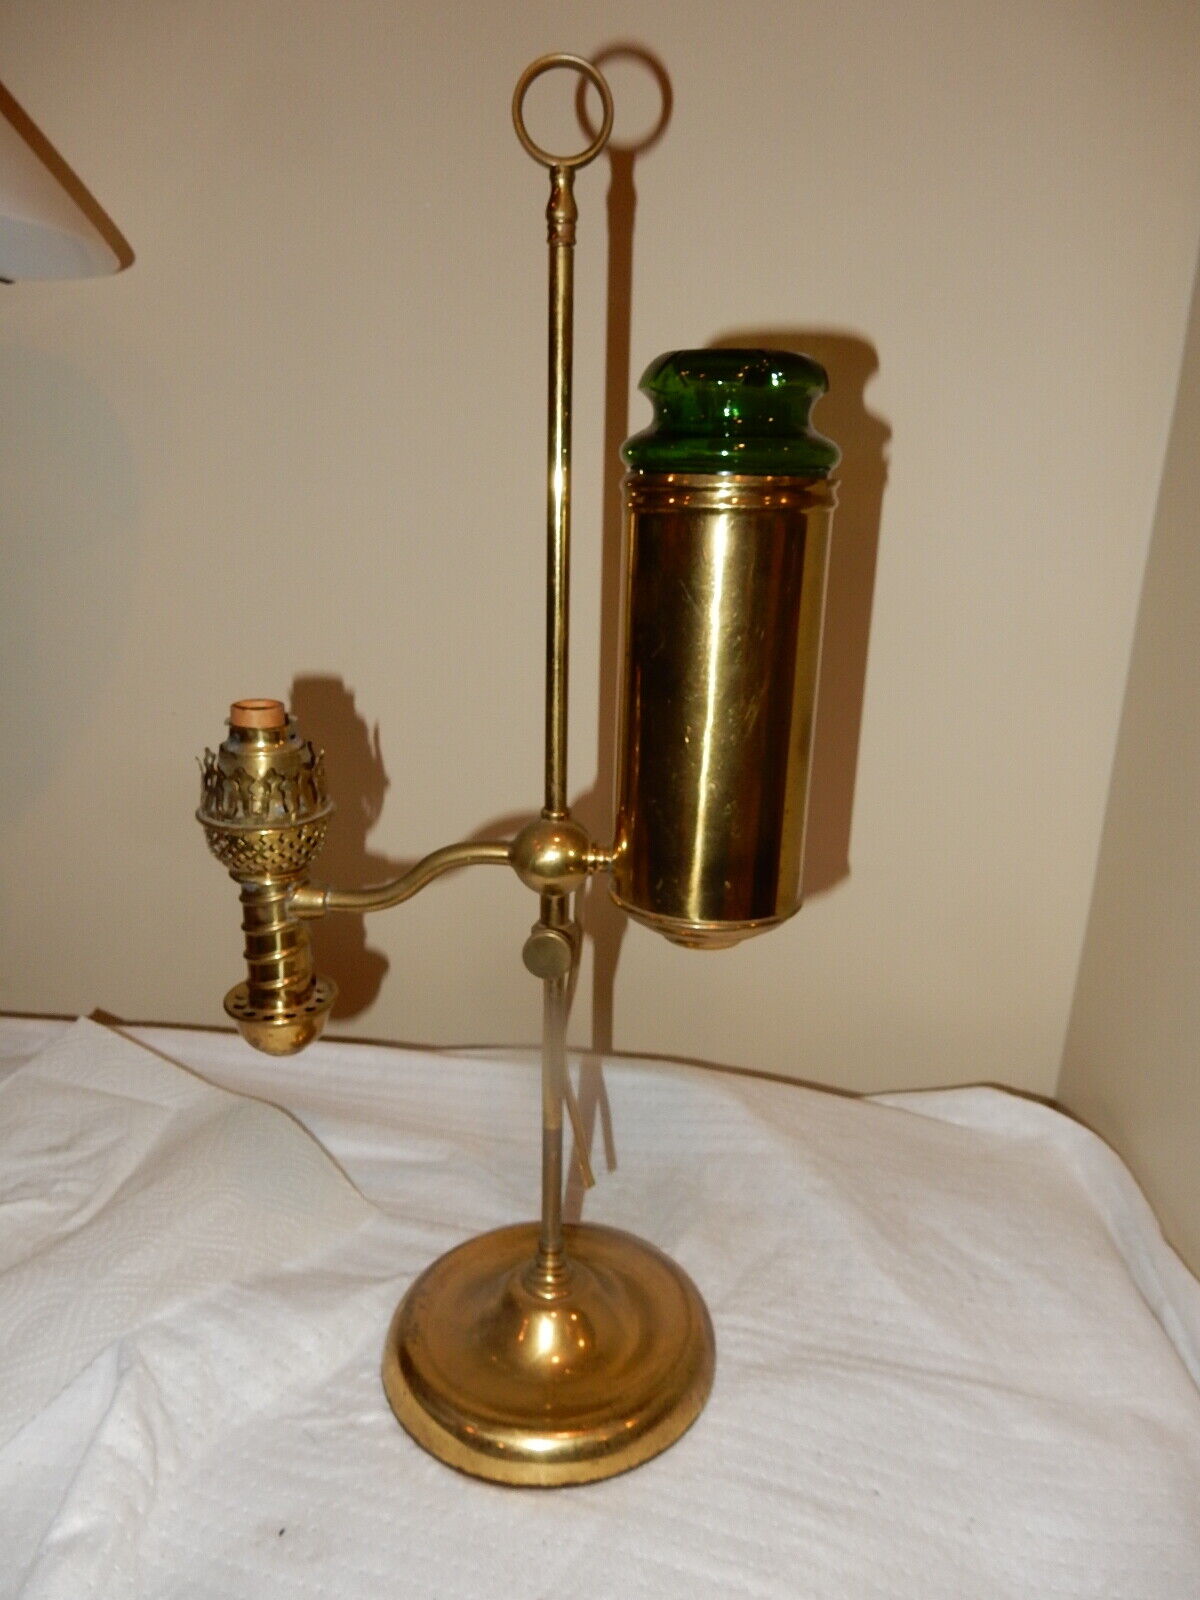 RARE MANHATTAN KEROENE OIL BRASS PARLOR STUDENT LAMP--APPLE GREEEN GLASS TANK